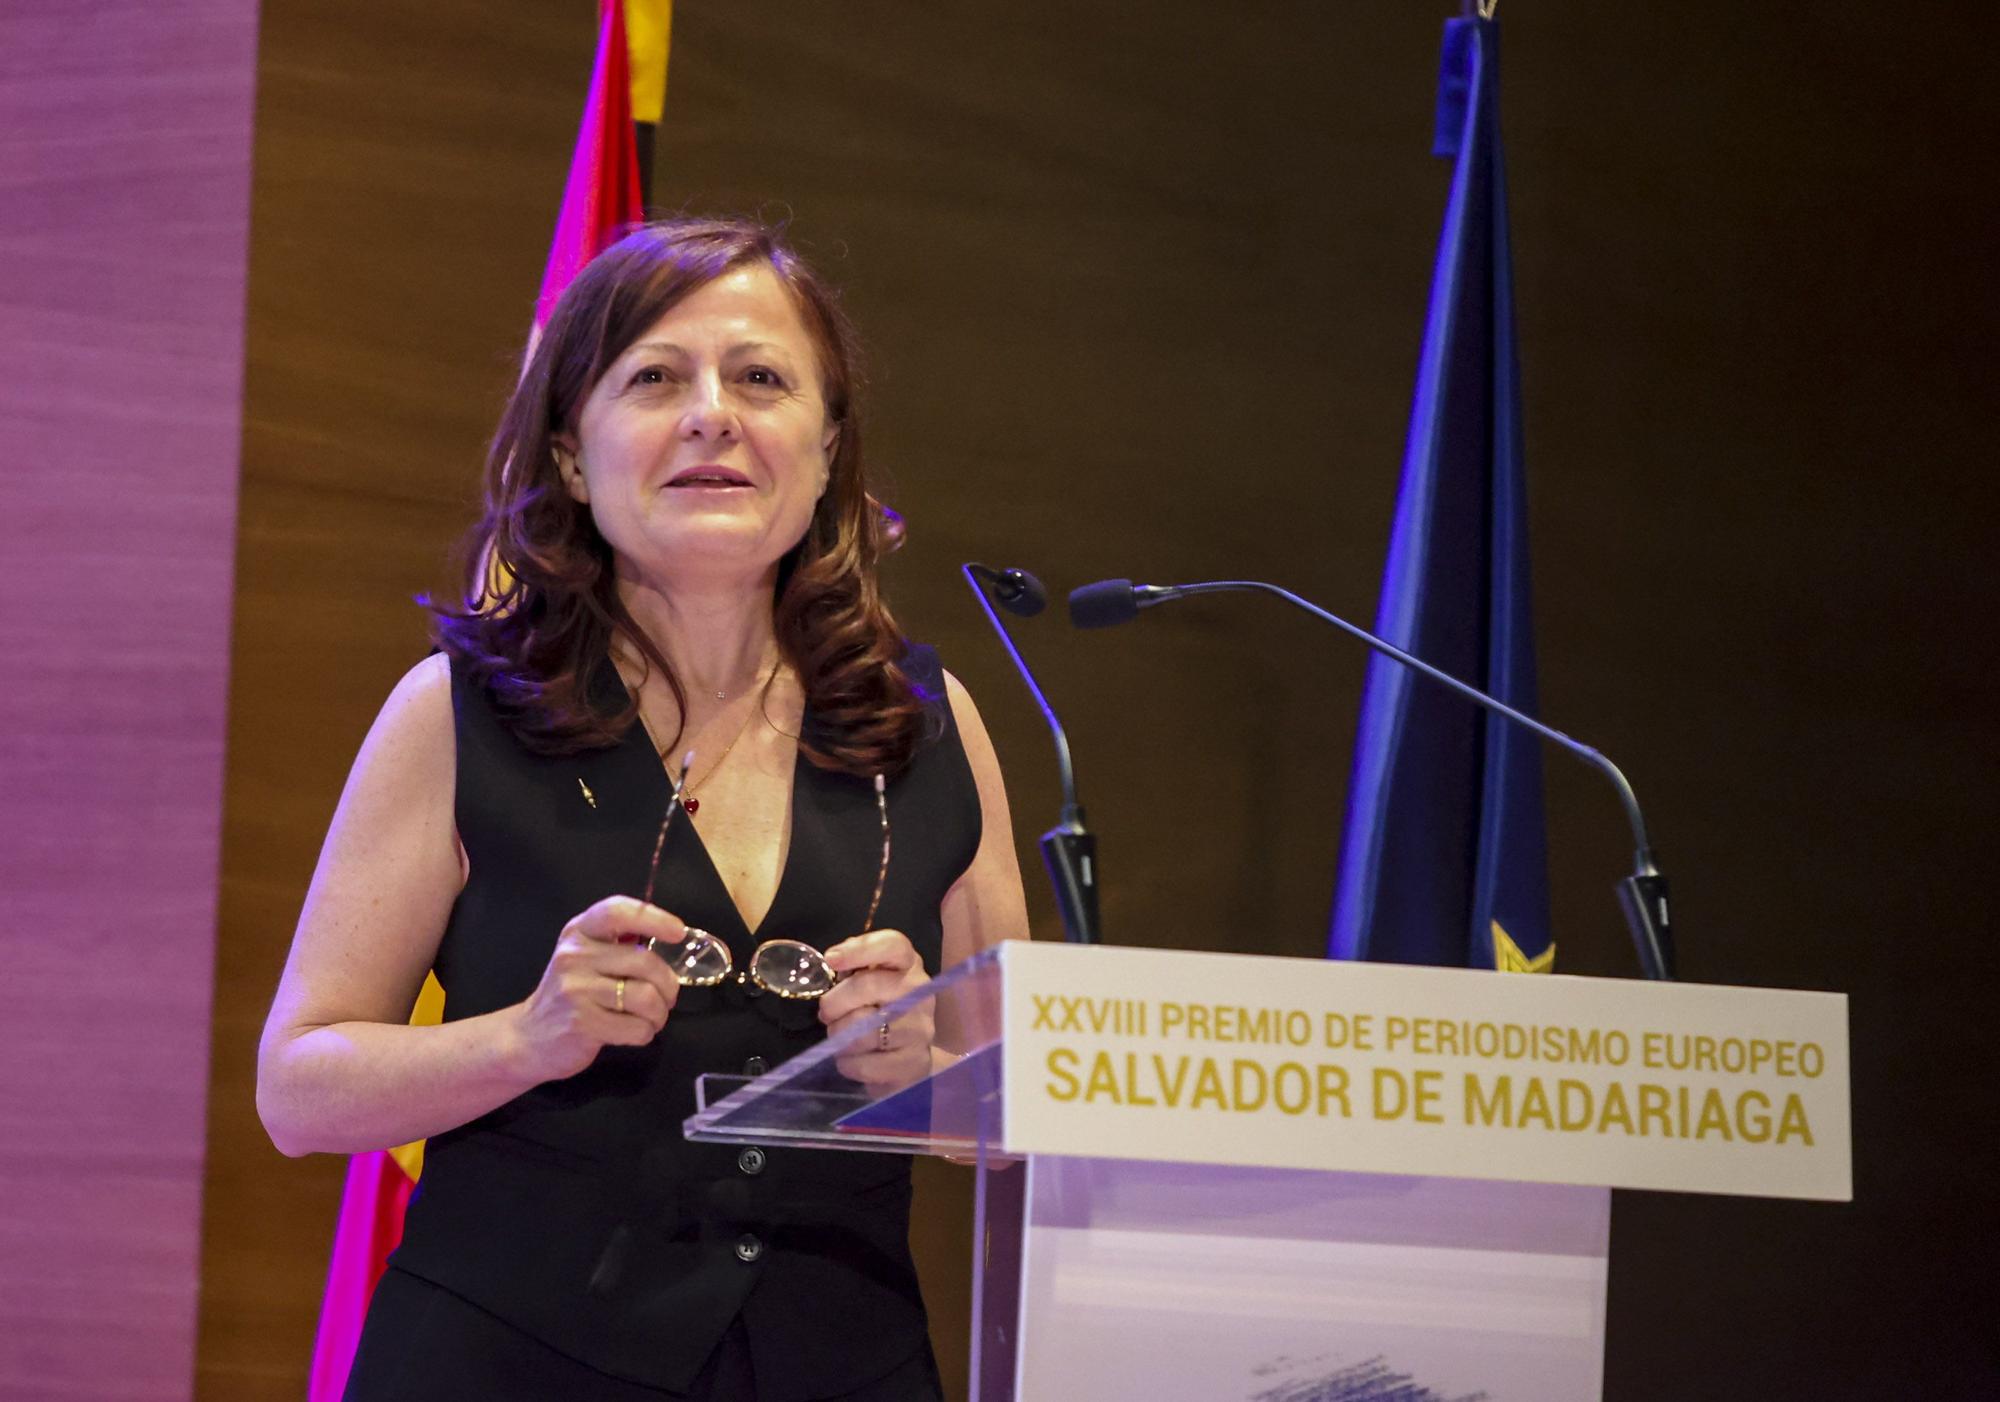 XXVIII Premio de Periodismo Europeo "Salvador de Madariaga"